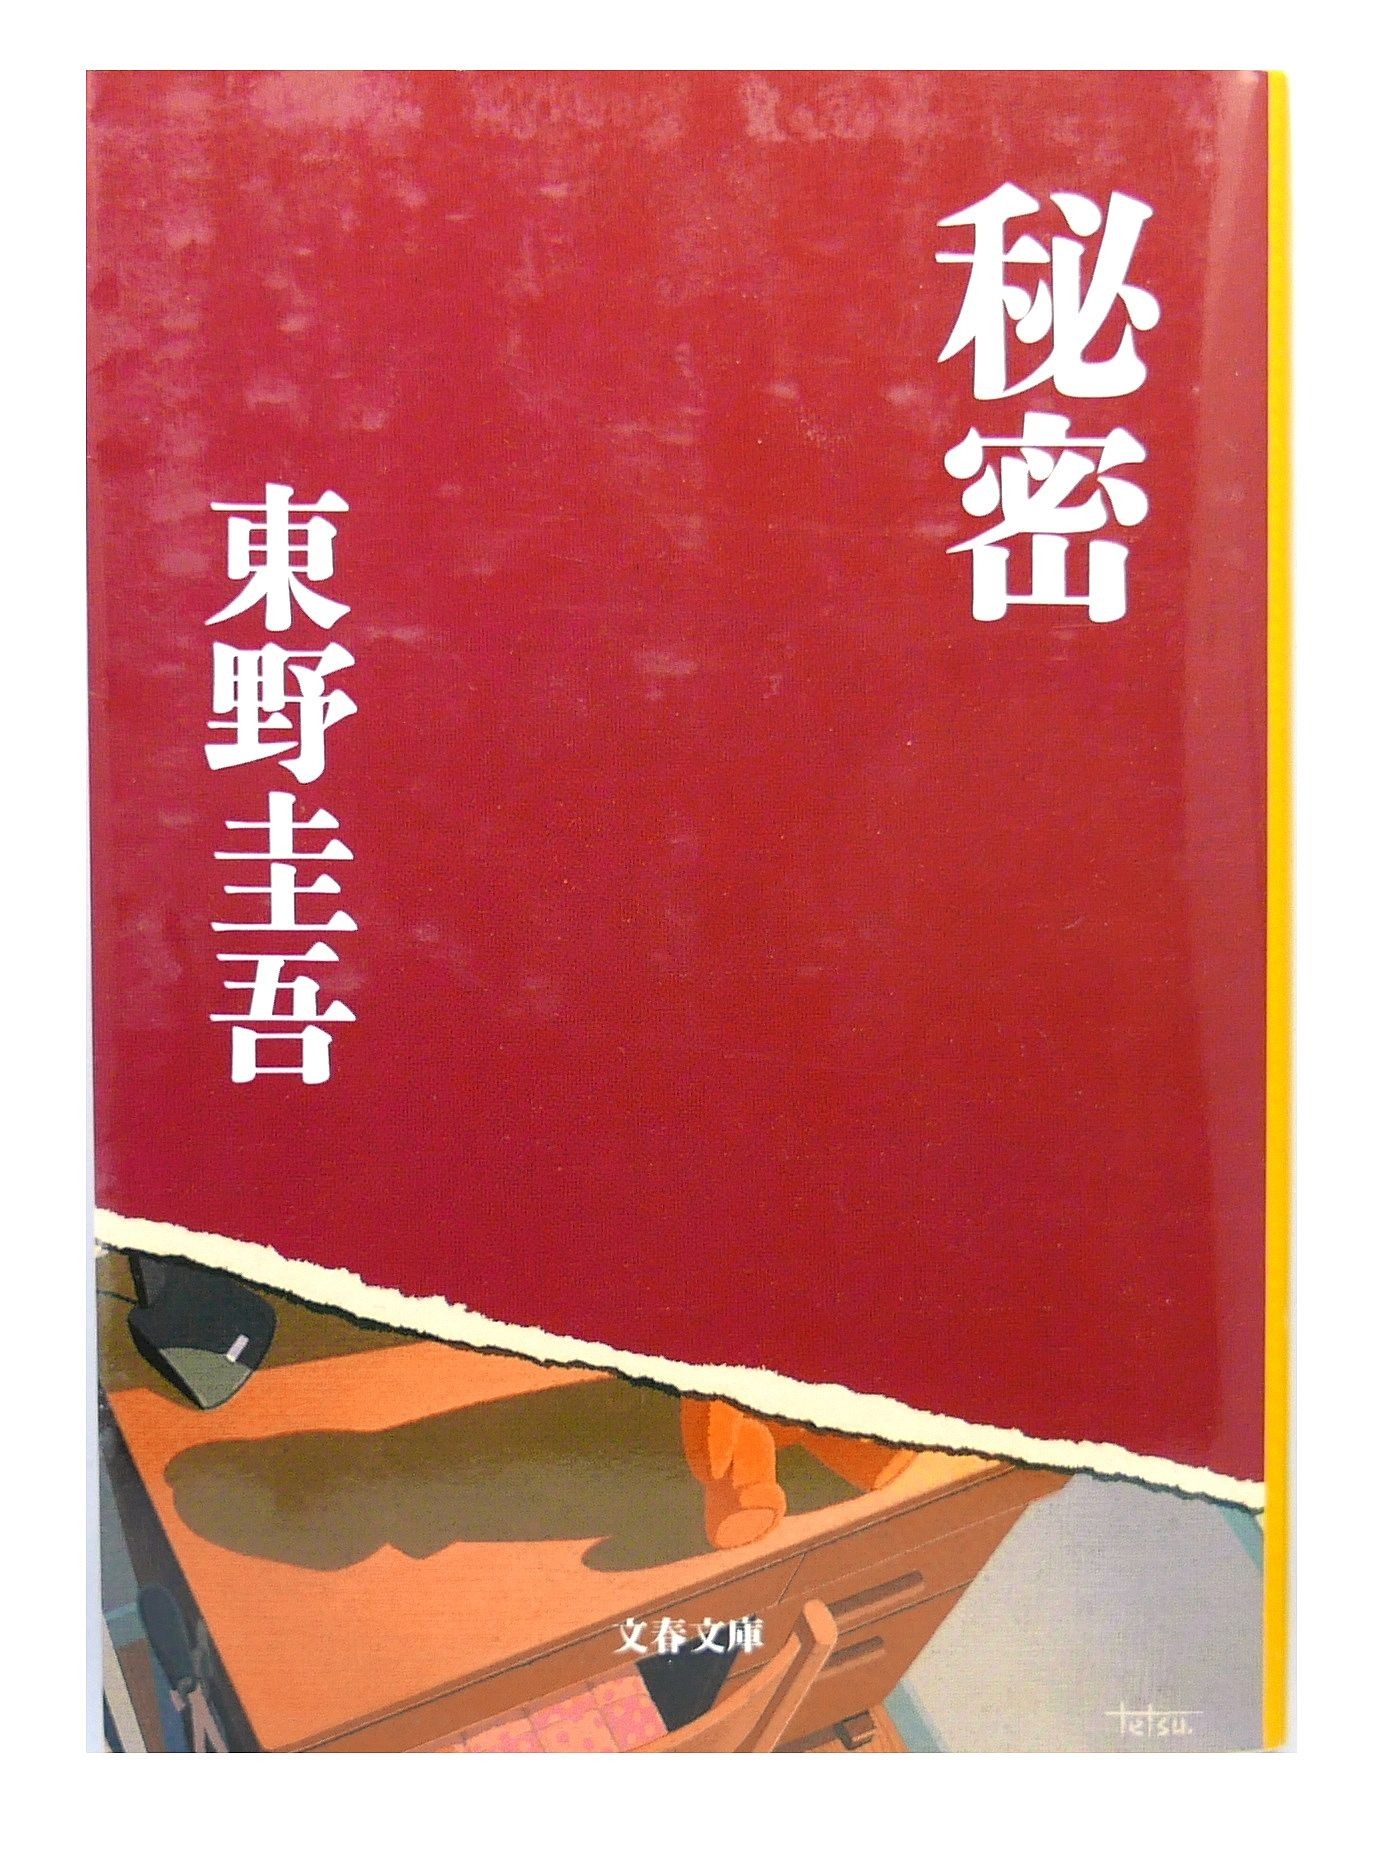 Marque-pages Japon - - (EAN13 : 9782376715184)